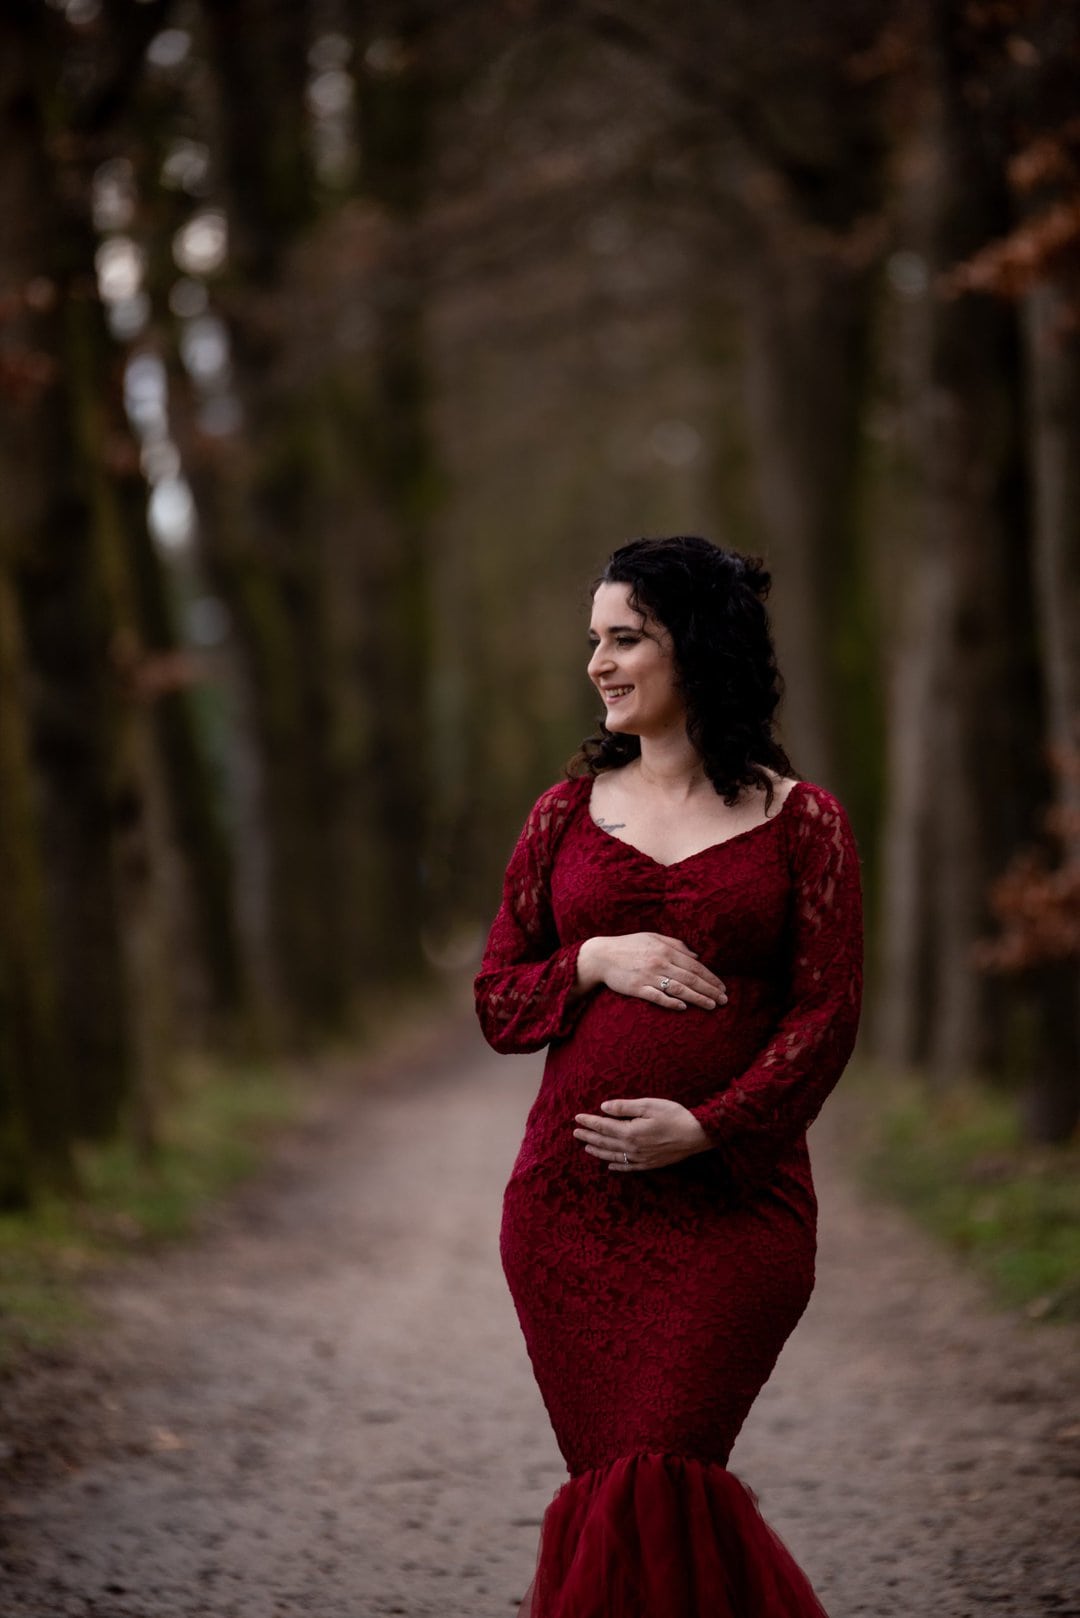 zwangerschap fotoshoot buiten amersfoort woudenberg